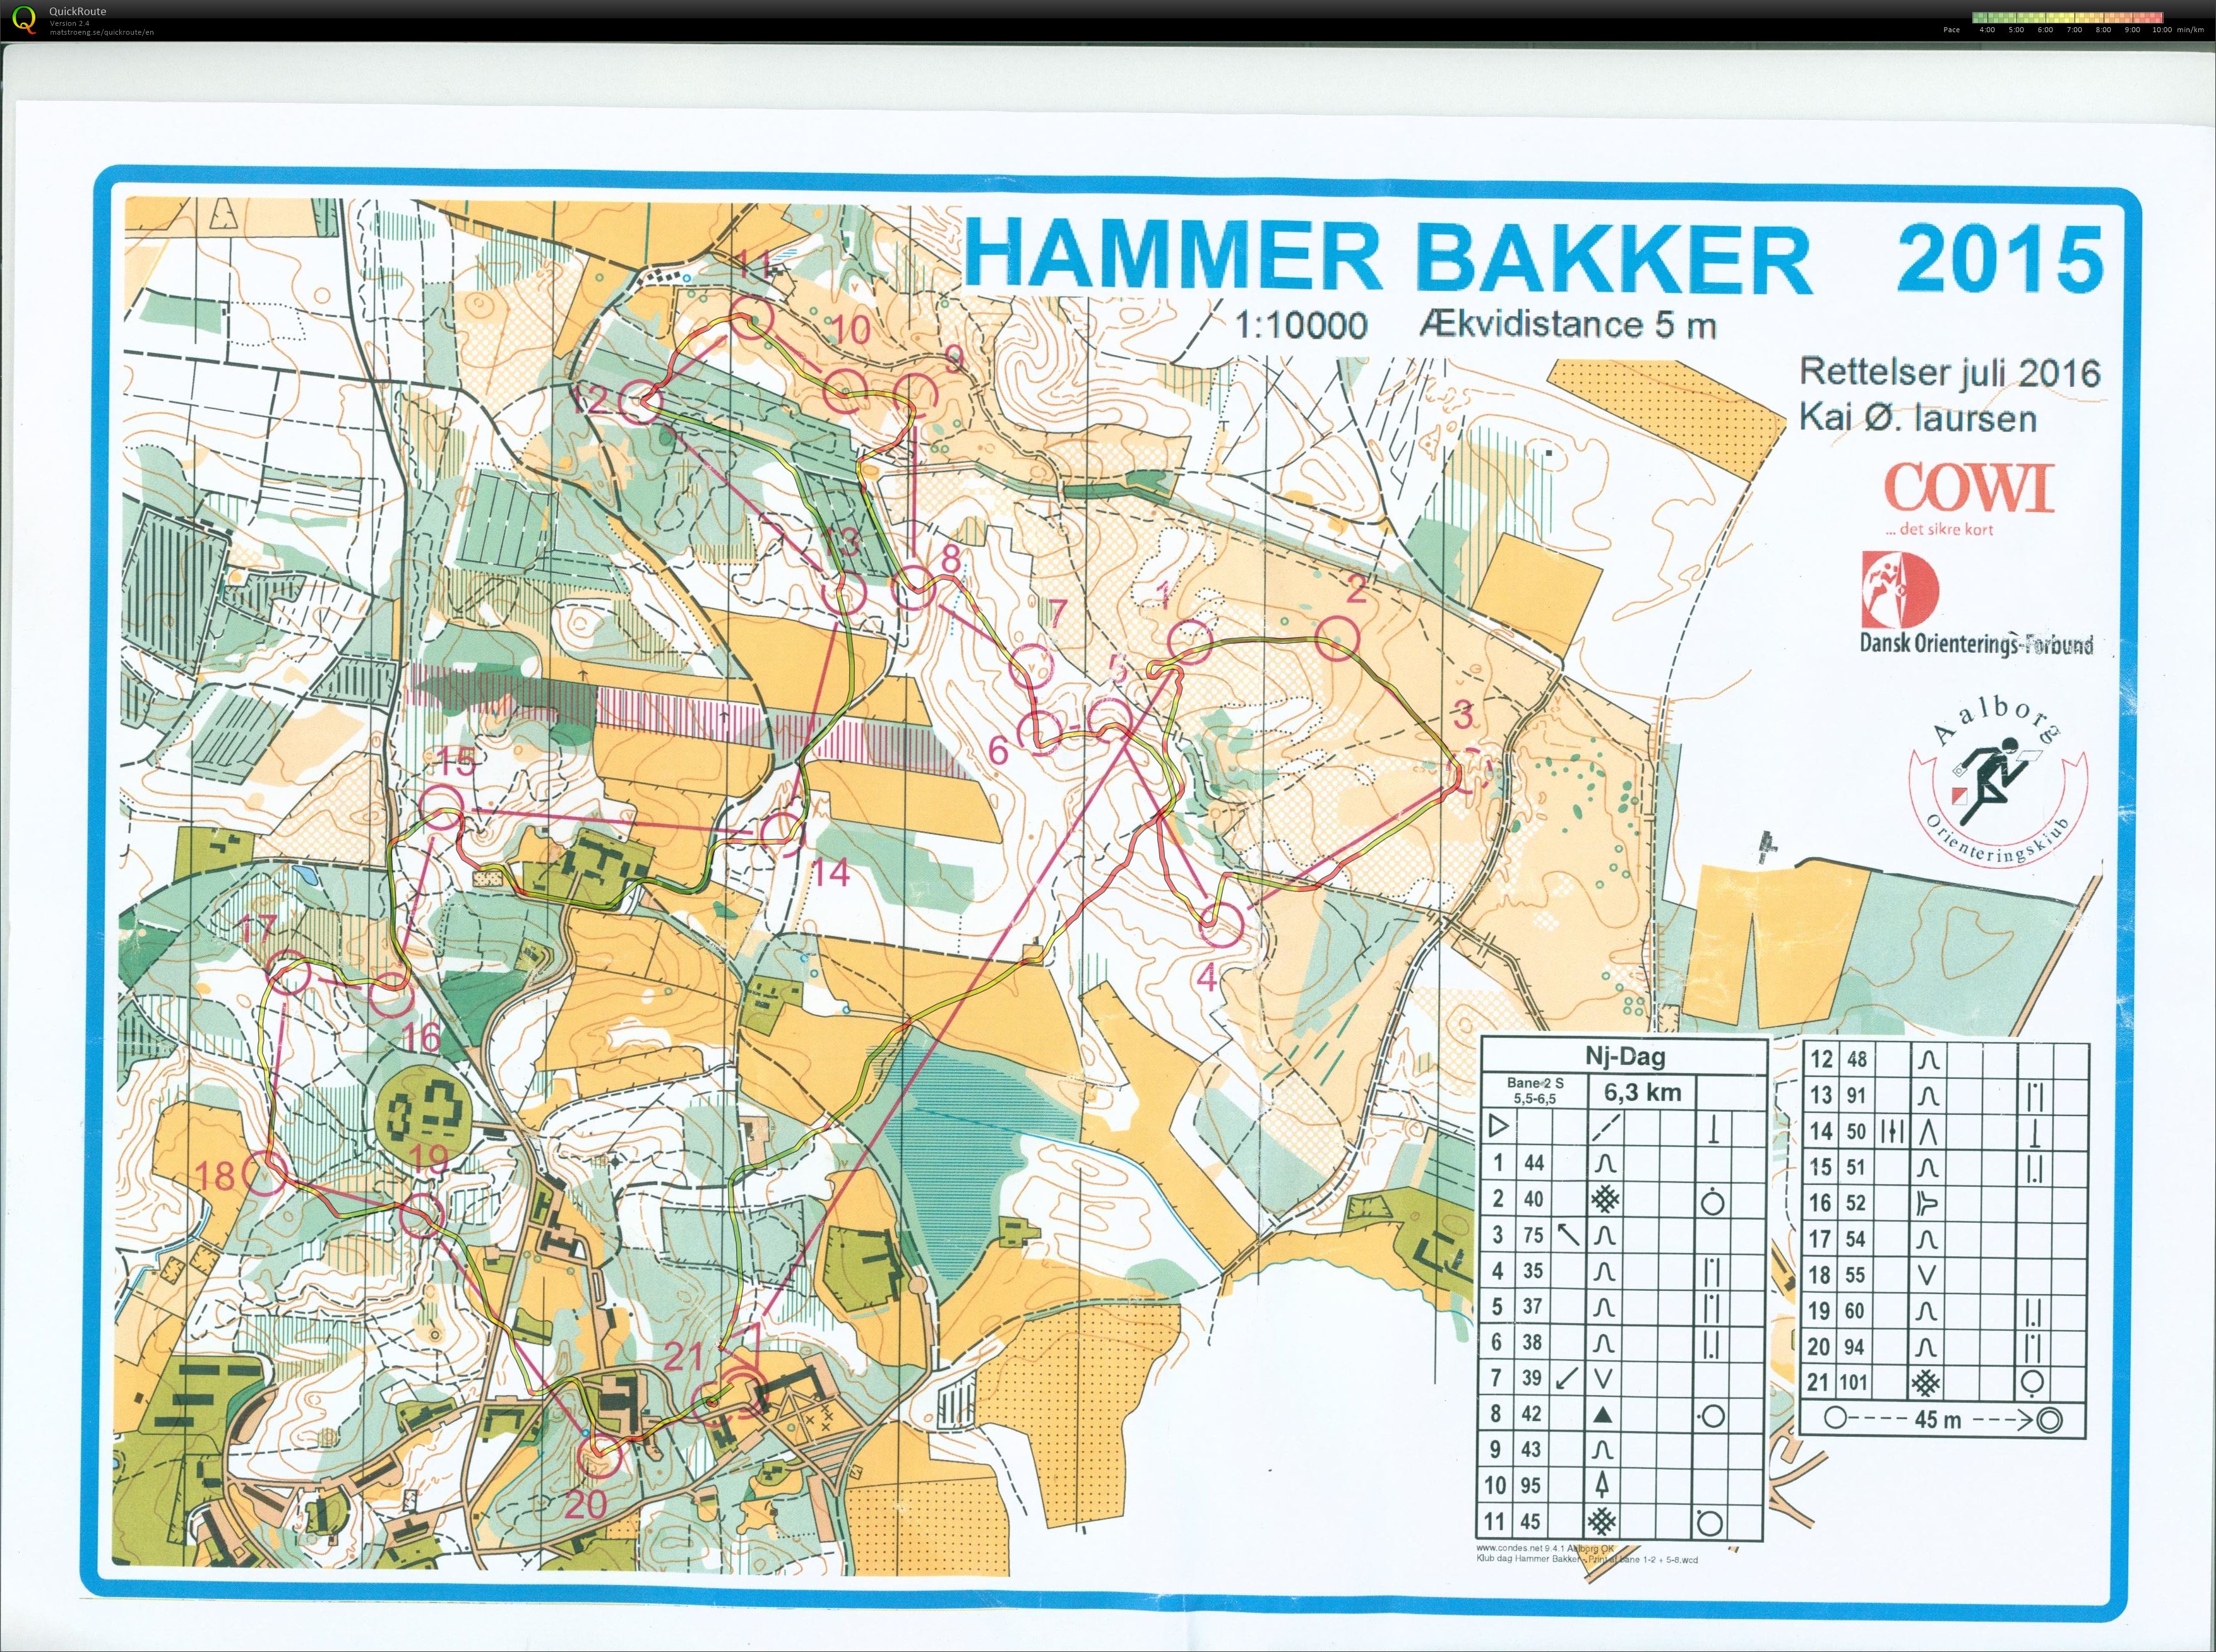 Hammer Bakker bane 2 Keld Gade (2016-11-13)